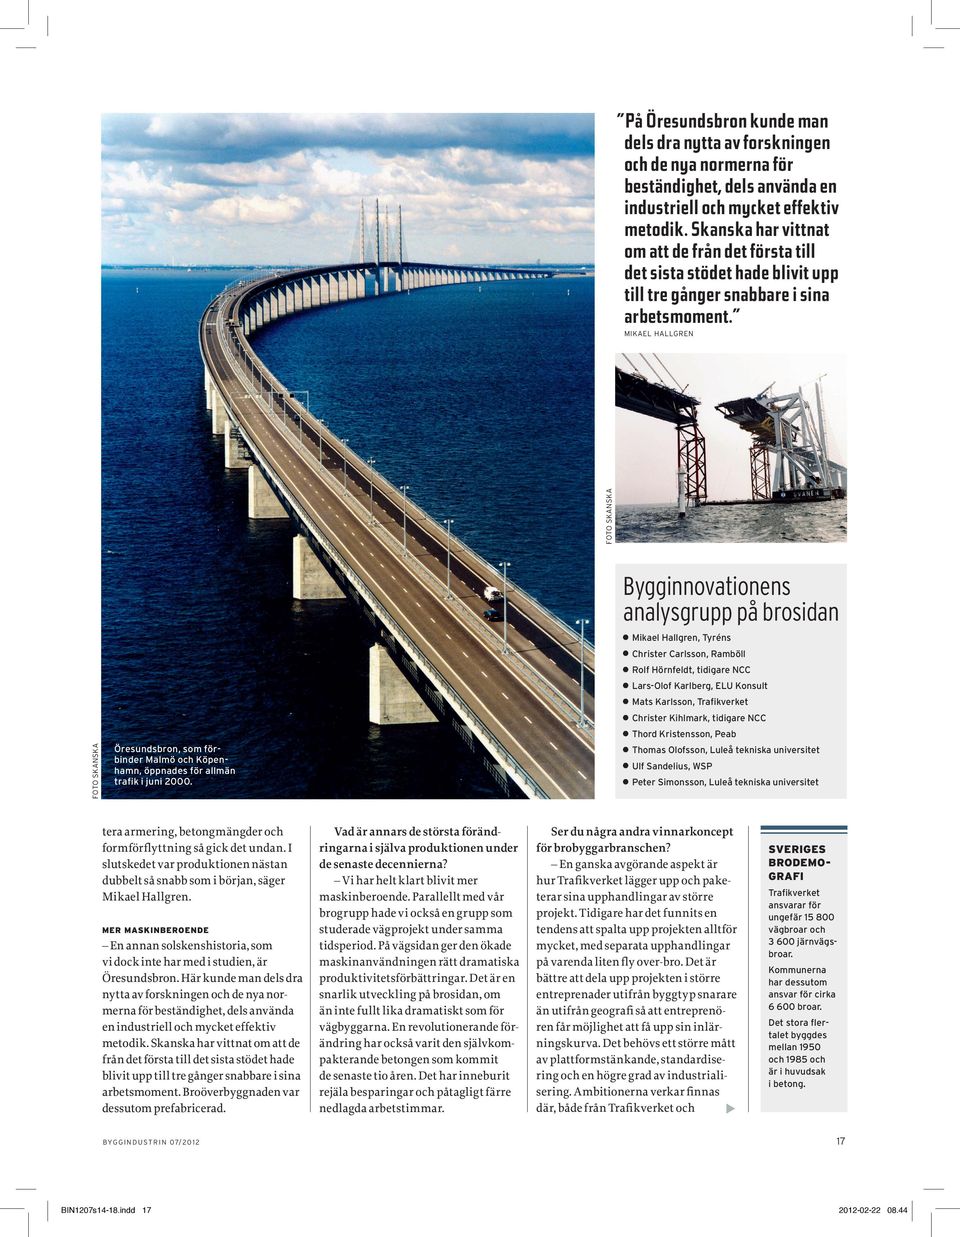 Bygginnovationens analysgrupp på brosidan Öresundsbron, som för- binder Malmö och Köpenhamn, öppnades för allmän trafik i juni 2000.